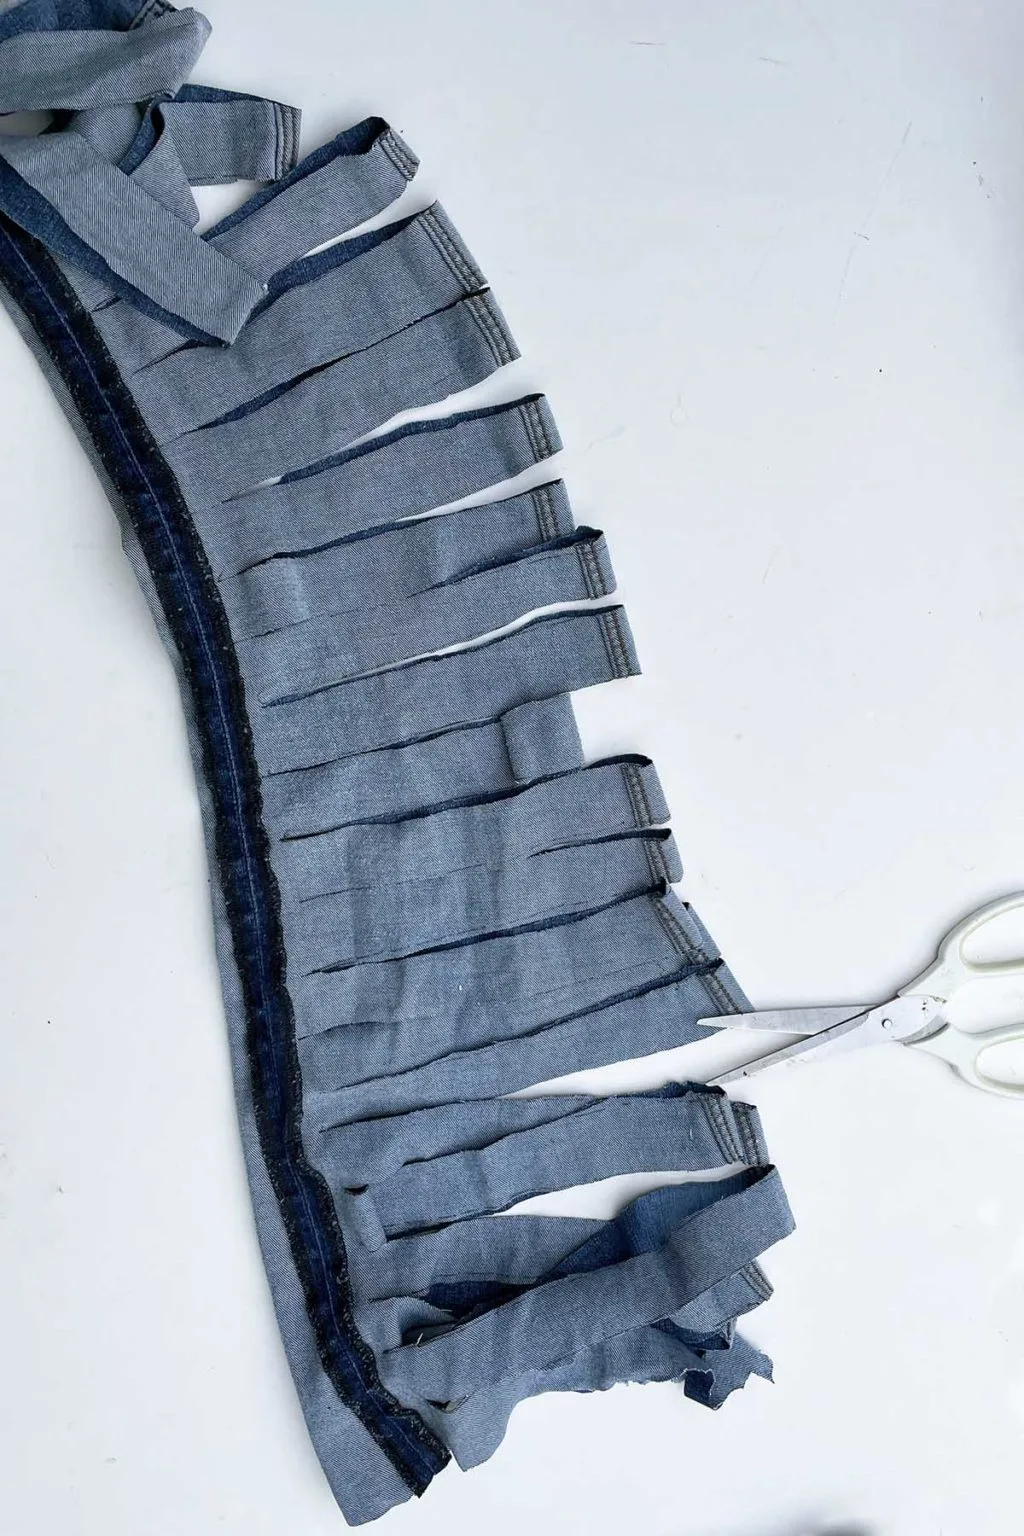 Уникальный способ сделать прикроватный коврик из джинсов простым способом джинсовой, пряжи, веревки, конец, через, джинсов, ткань, оберните, коврика, можно, пряжей, свободный, протяните, метров, предыдущий, витки, штанину, ткани, будет, коврик